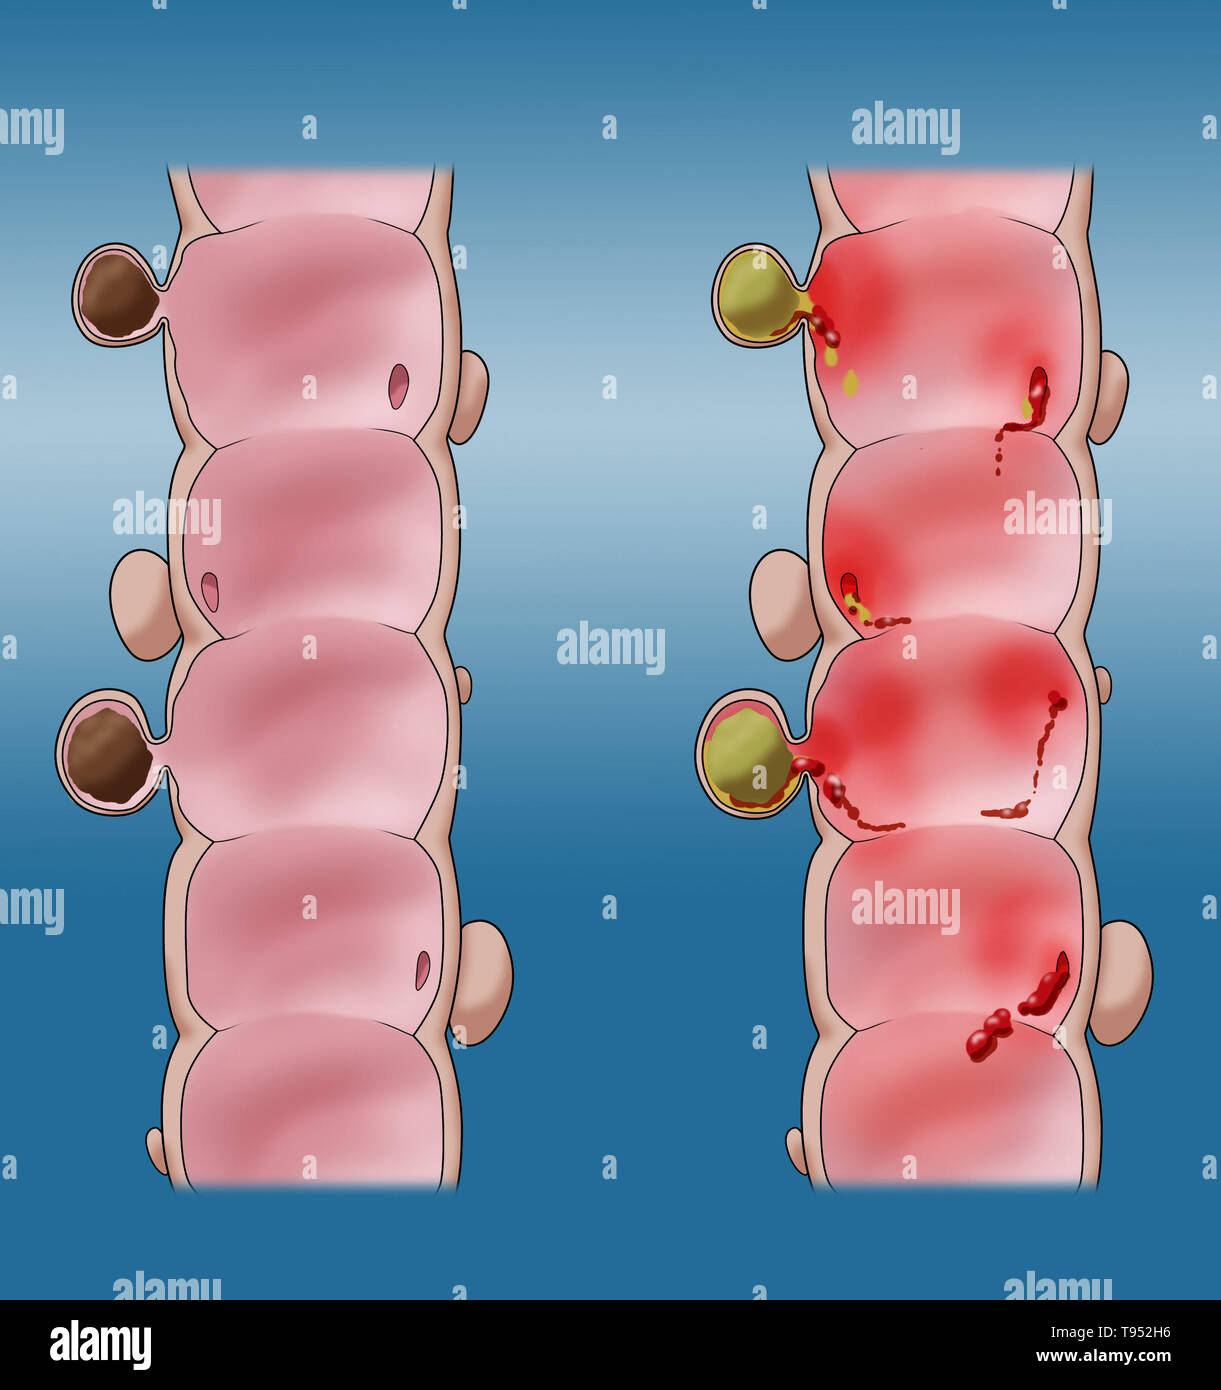 Abbildung: Vergleich von einem Doppelpunkt mit diverticulosis Diverticulitis (links) und (rechts). Stockfoto